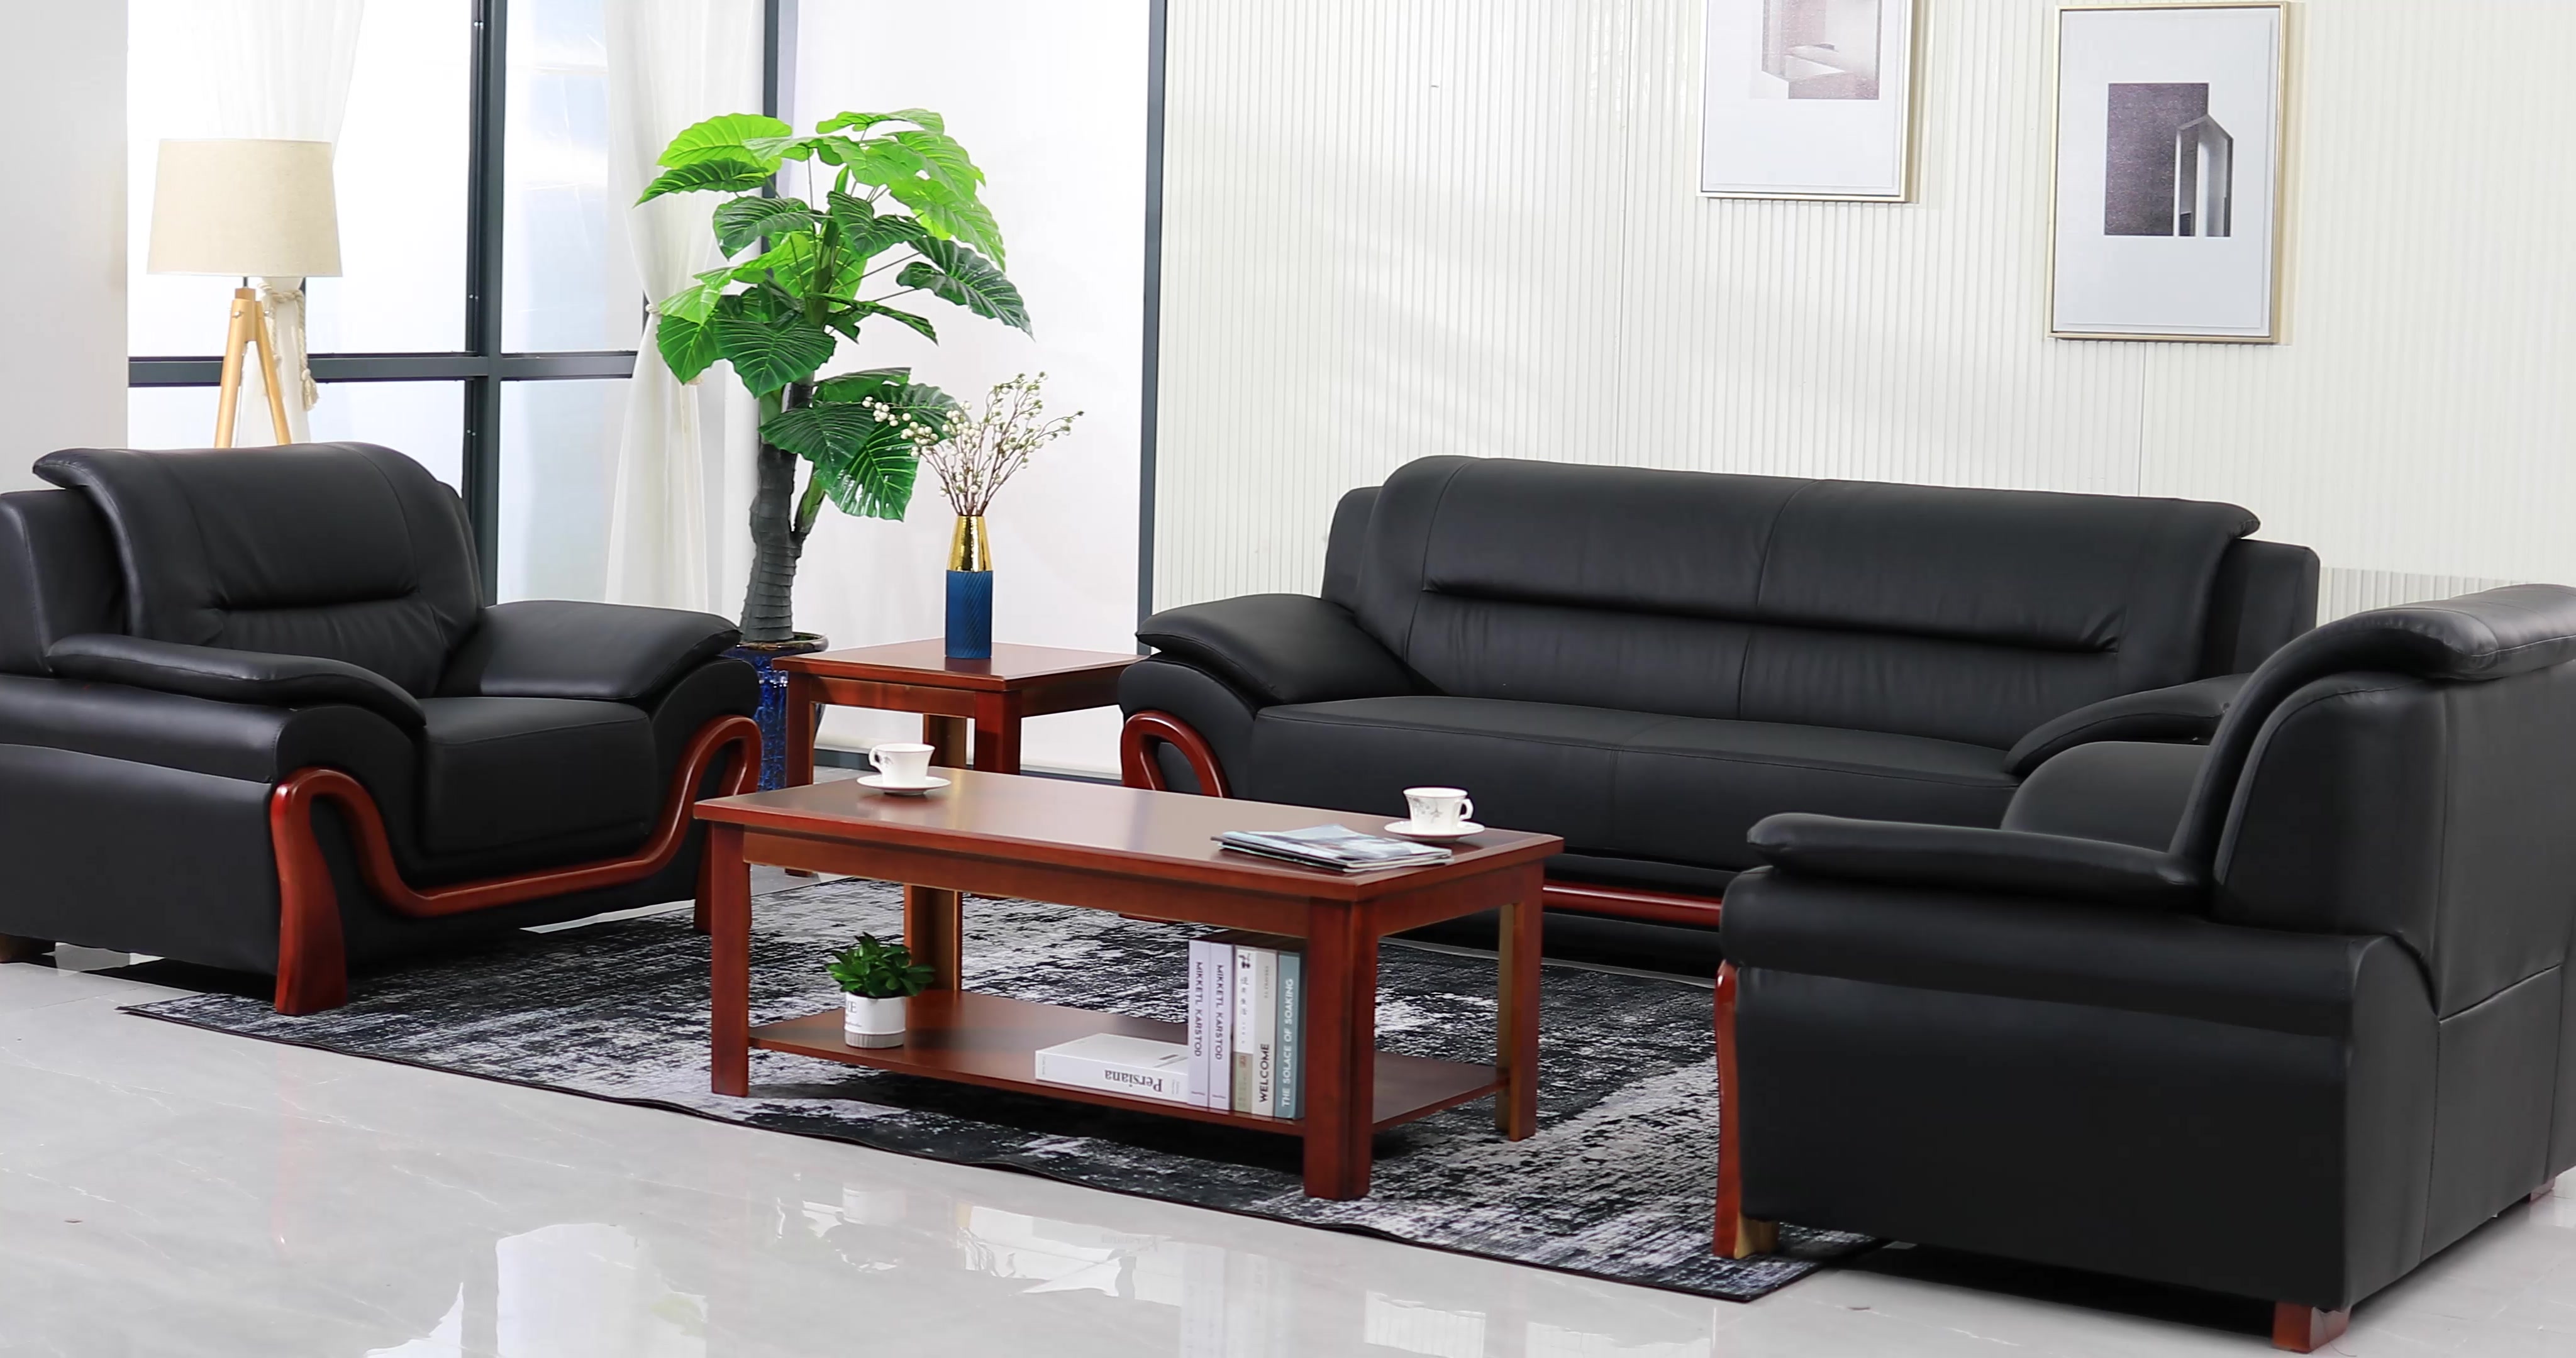 中伟办公沙发办公家具会客沙发接待沙发时尚简约商务沙发组合3 1 1 大